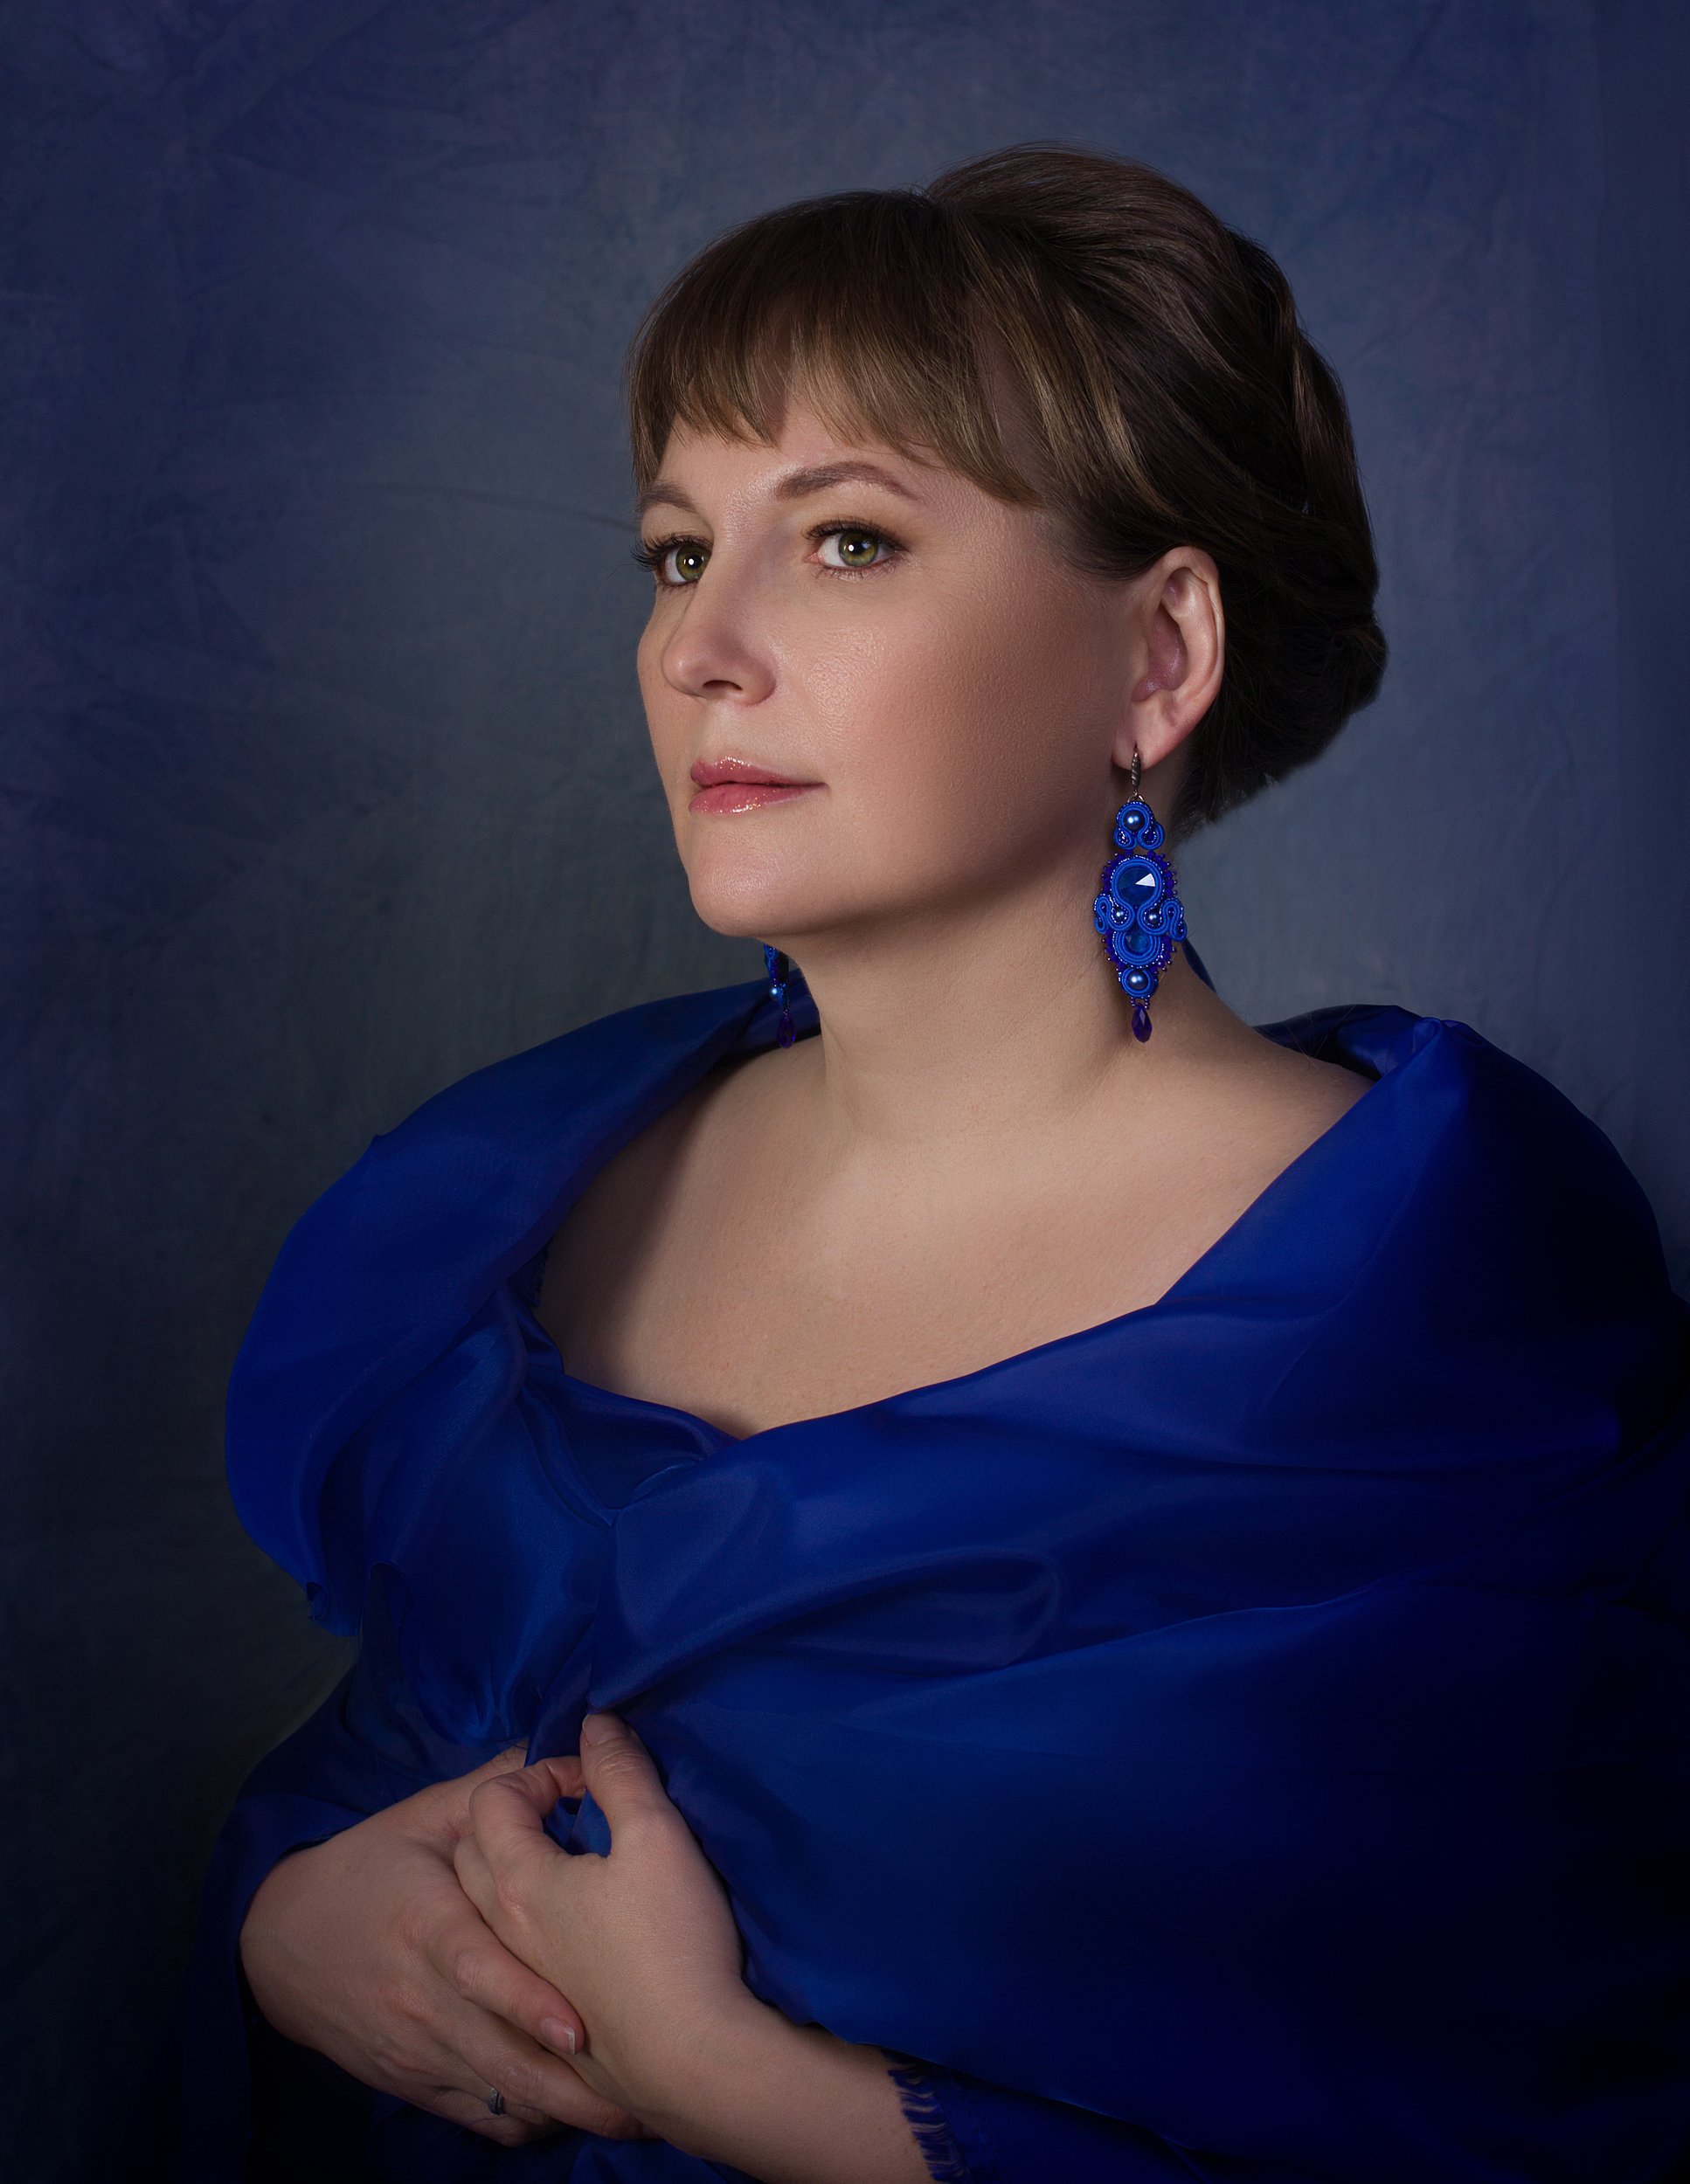 Женский портрет, портрет, синий цвет, украшения, Ксения Okdmuse